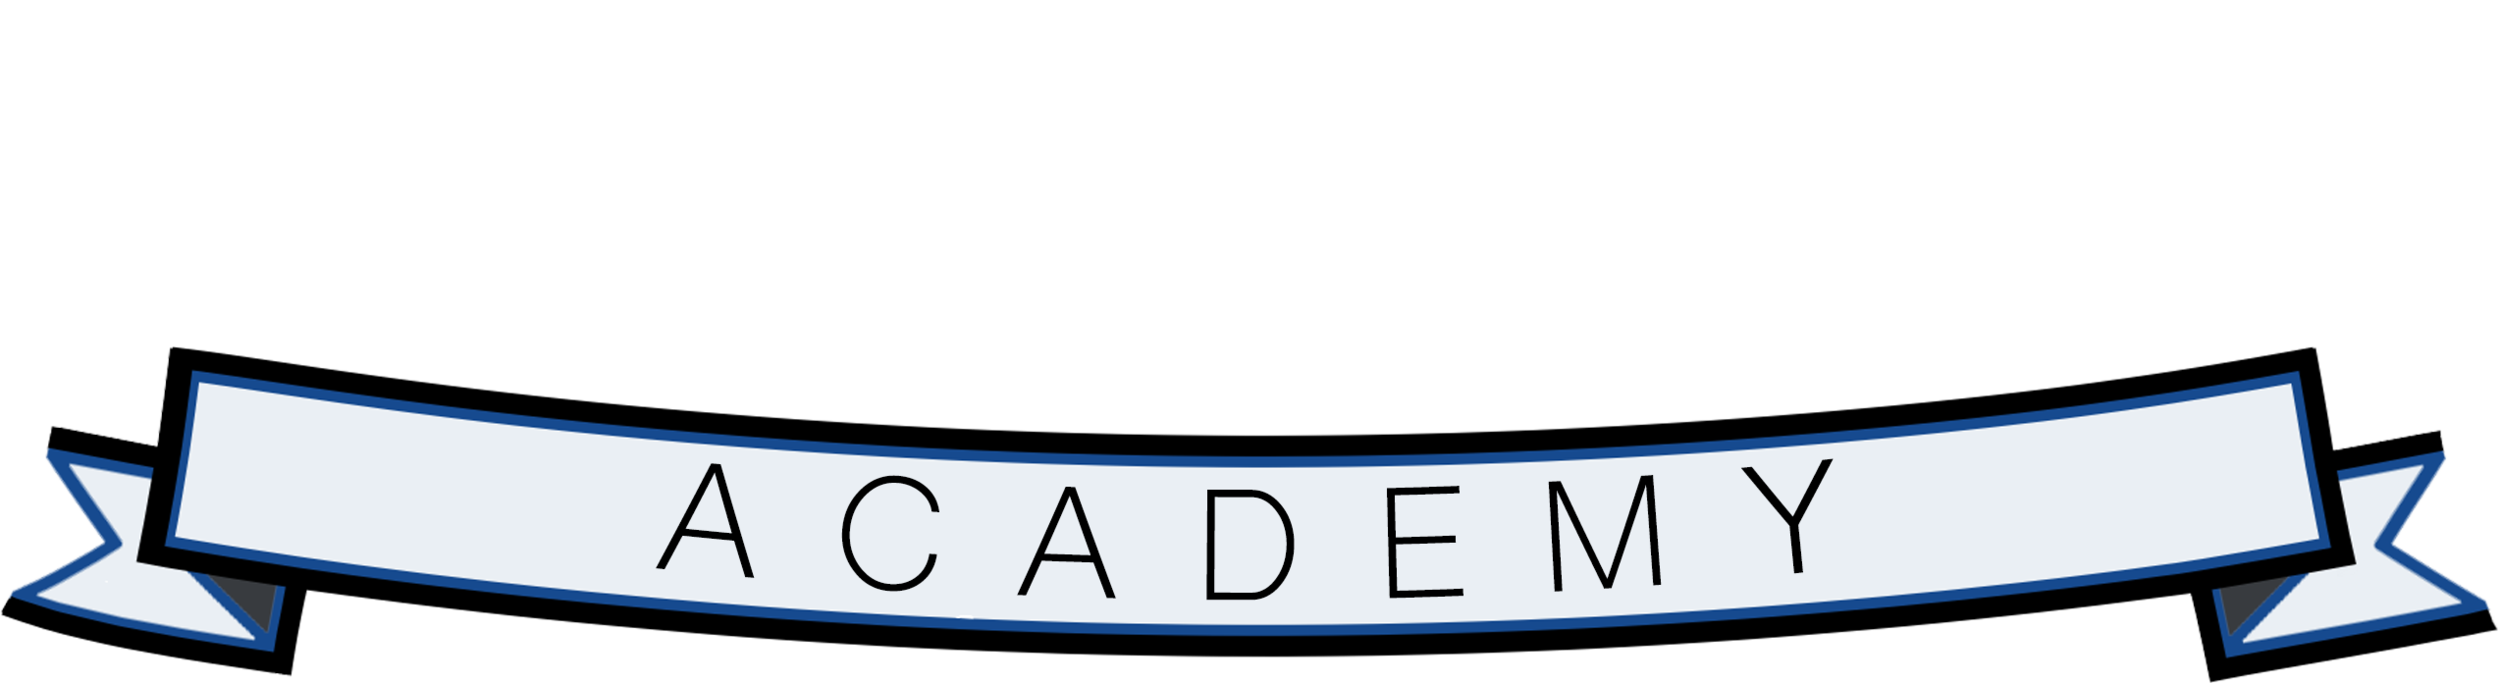 Kidz First Academy - Long Beach Preschool